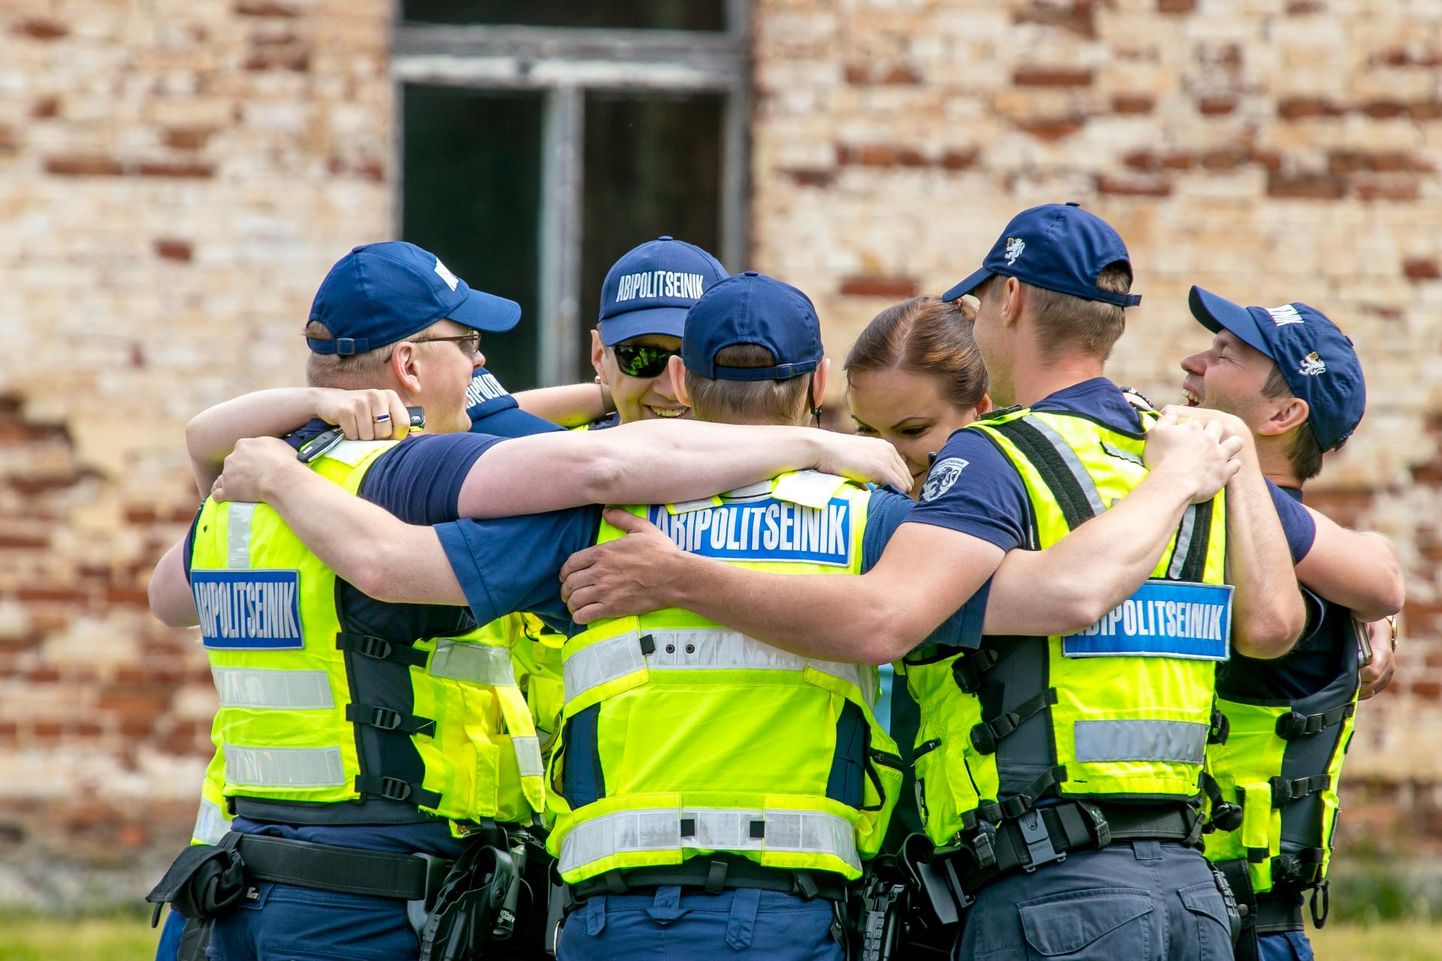 Abipolitseinikel on oluline roll politseitööd toetada.